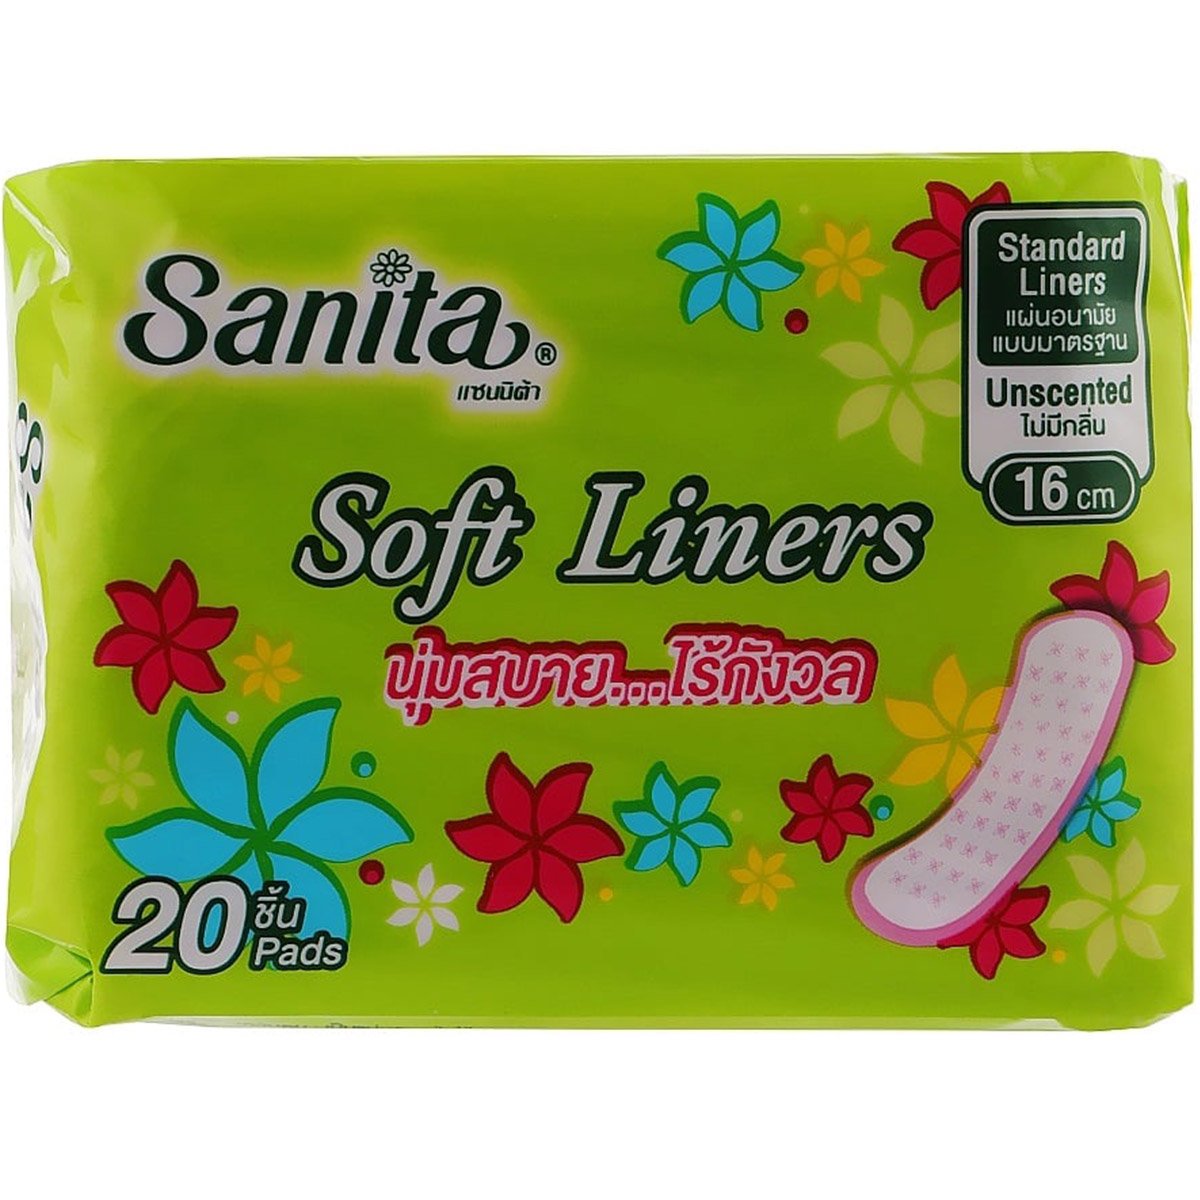 Щоденні гігієнічні прокладки Sanitaі Soft Liners 16 см 20 шт. - фото 1